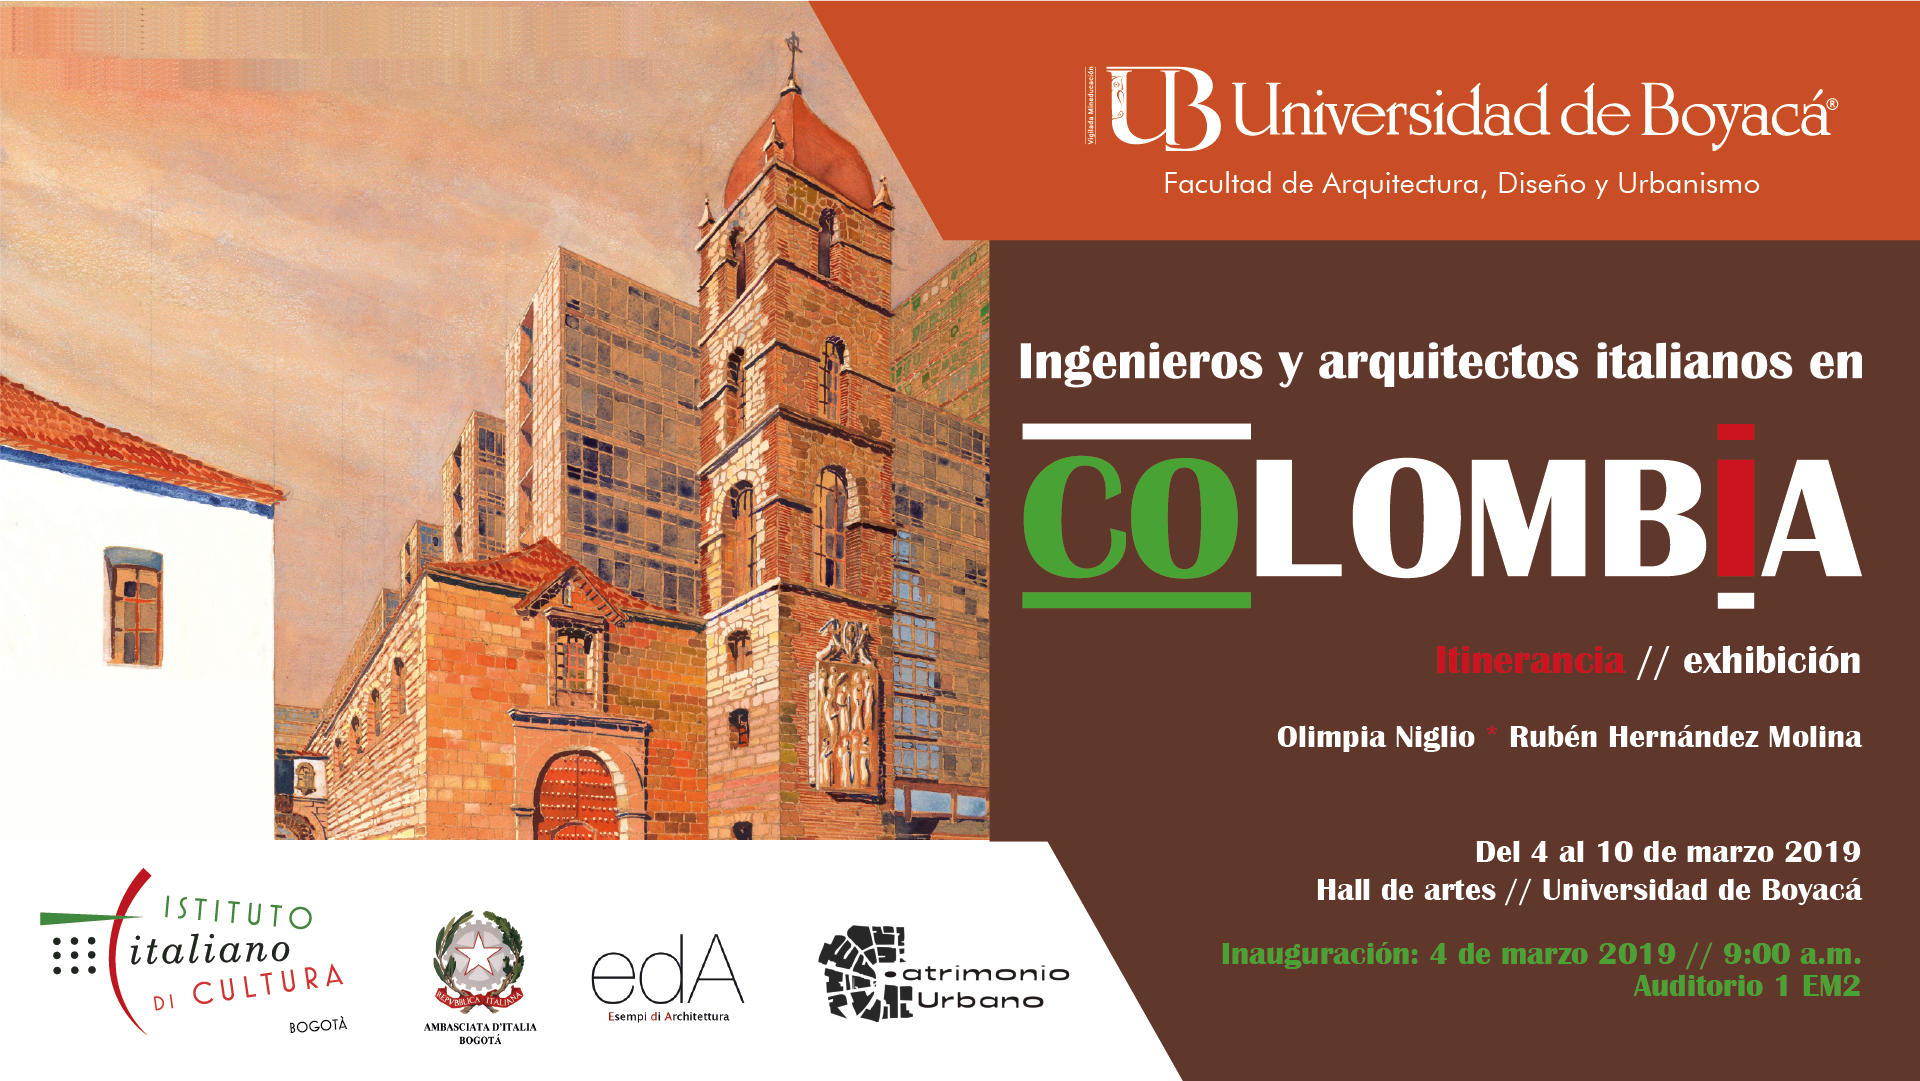 Ingenieros y Arquitectos Iatlianos en Colombia